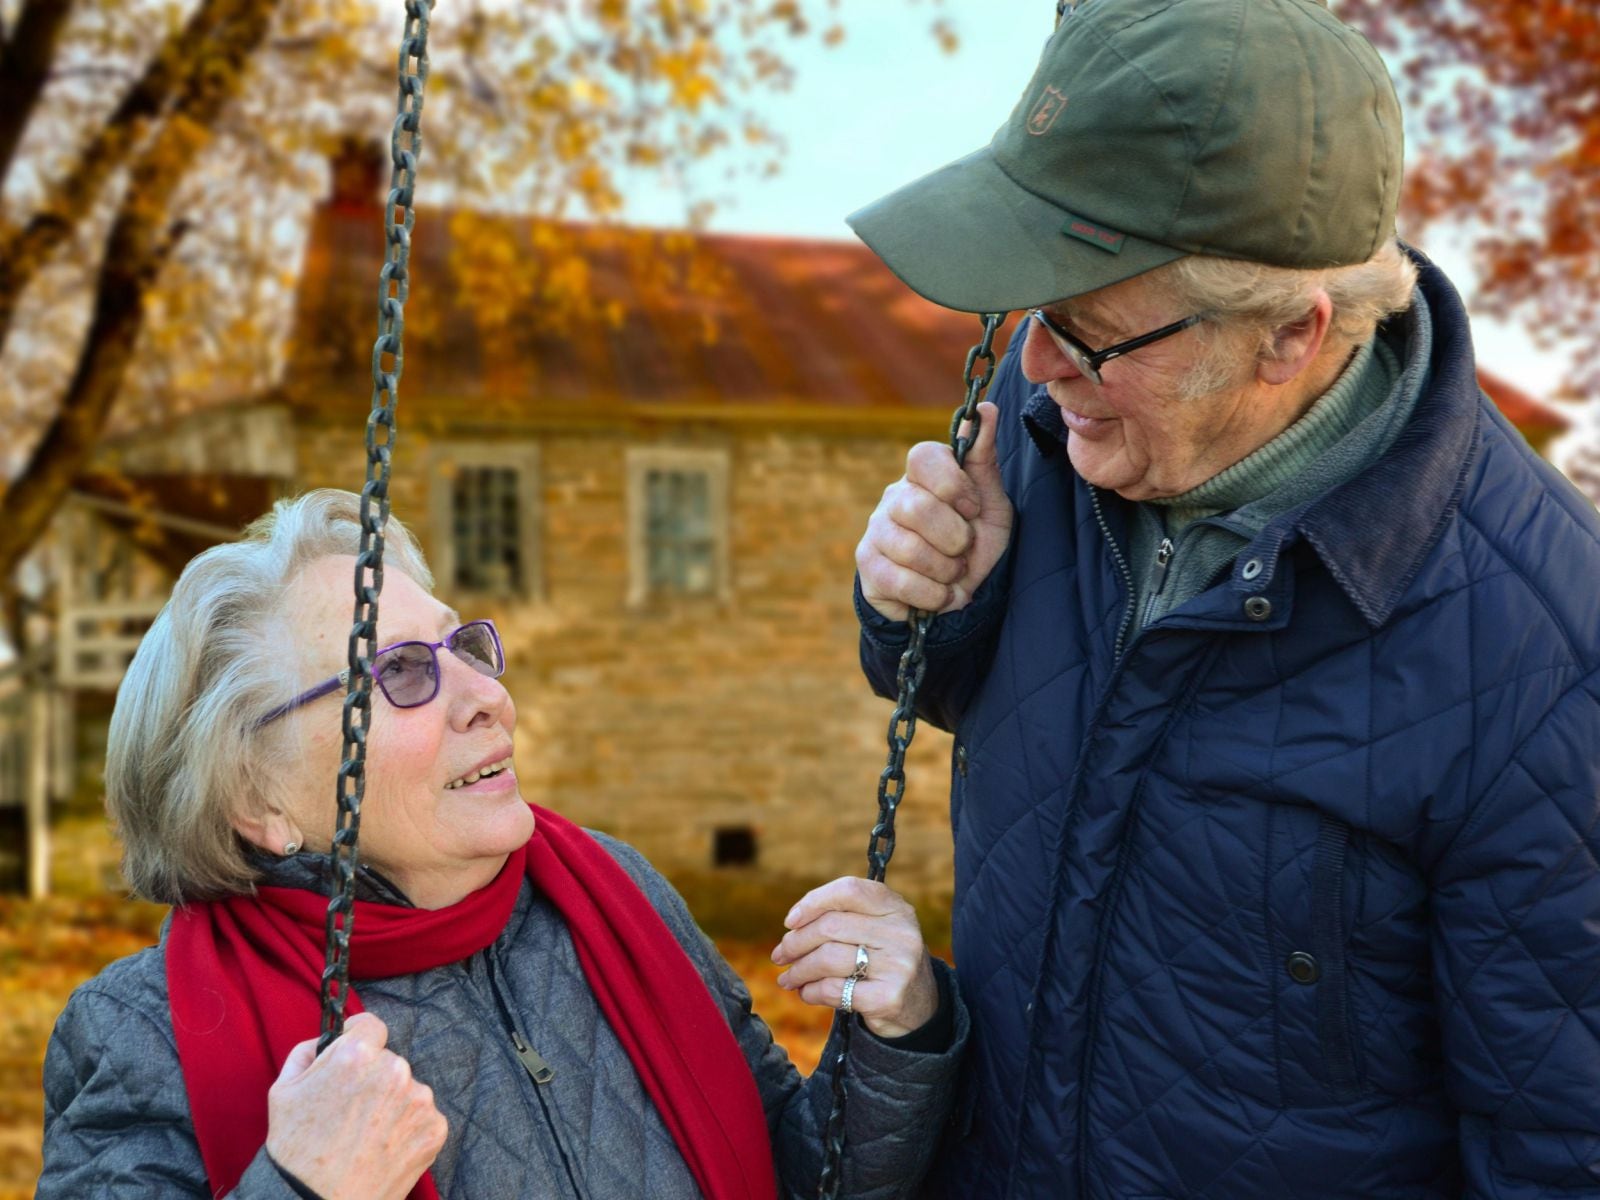 Dos adultos inscritos en el Seguro Social de Estados Unidos disfrutando de su jubilación (Foto: Pexels)